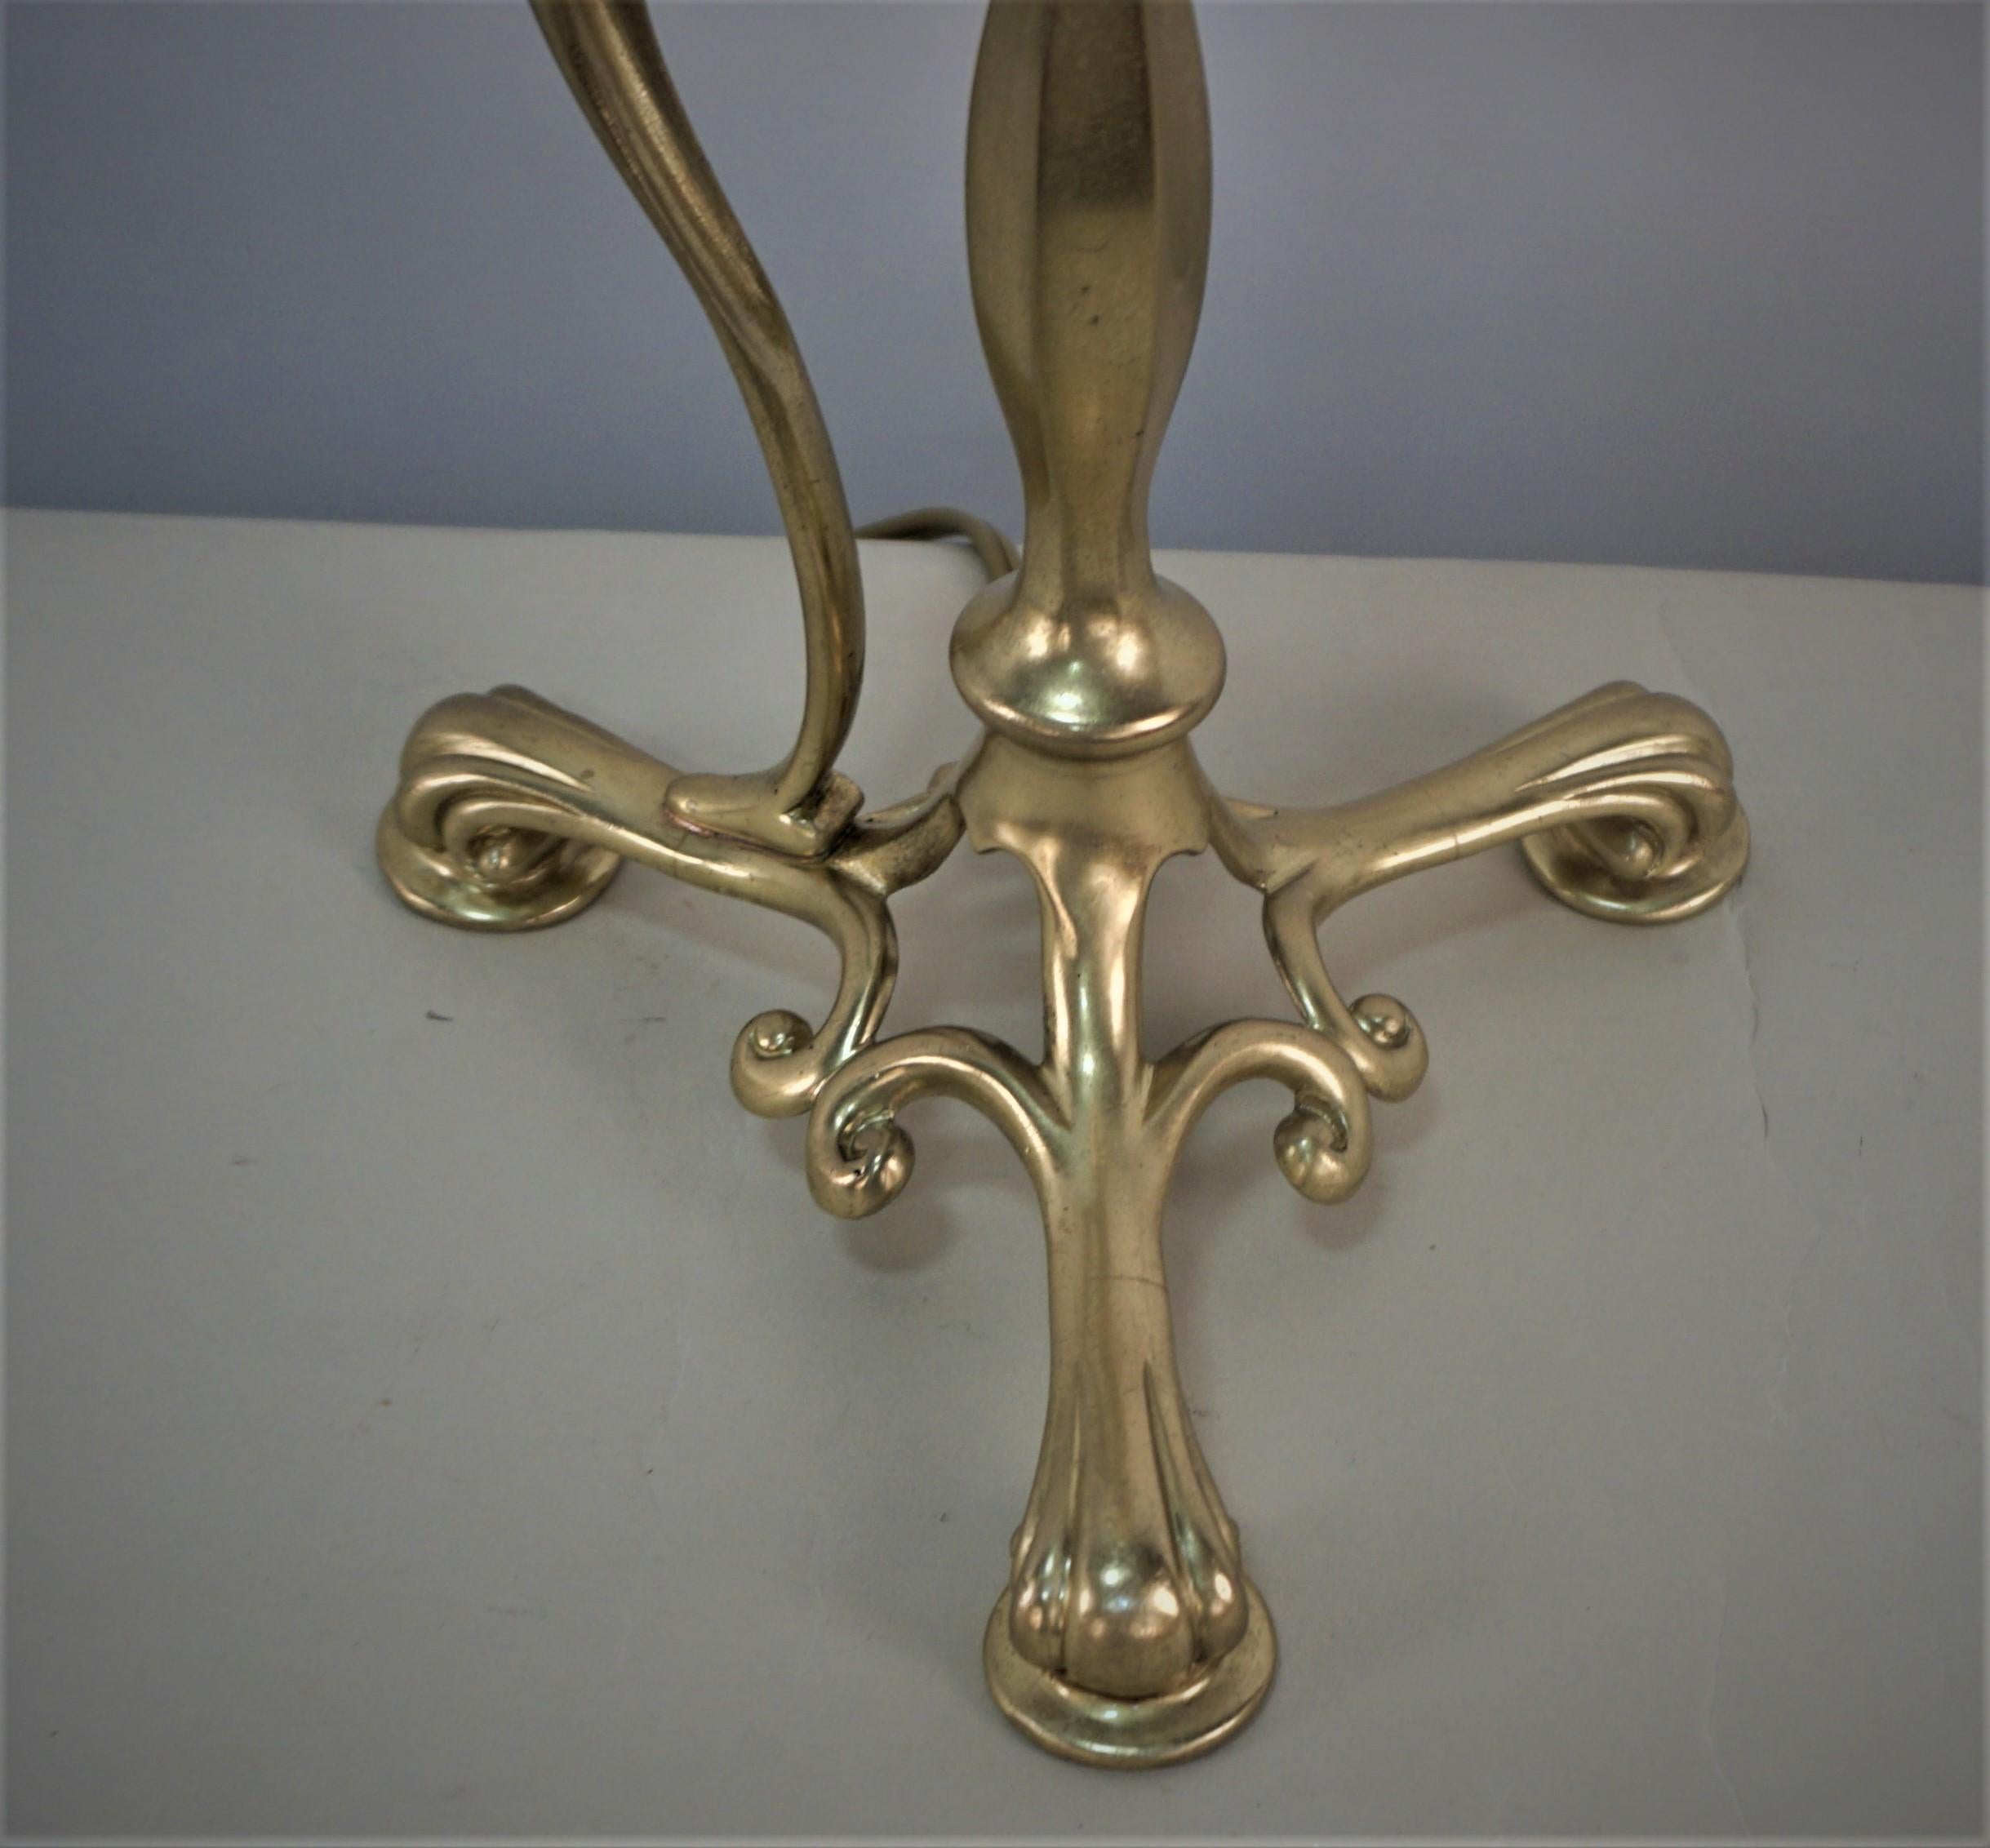 Schöne Arts & Crafts Tischlampe aus Bronze-Messing mit Vaseline-Glasschirm.